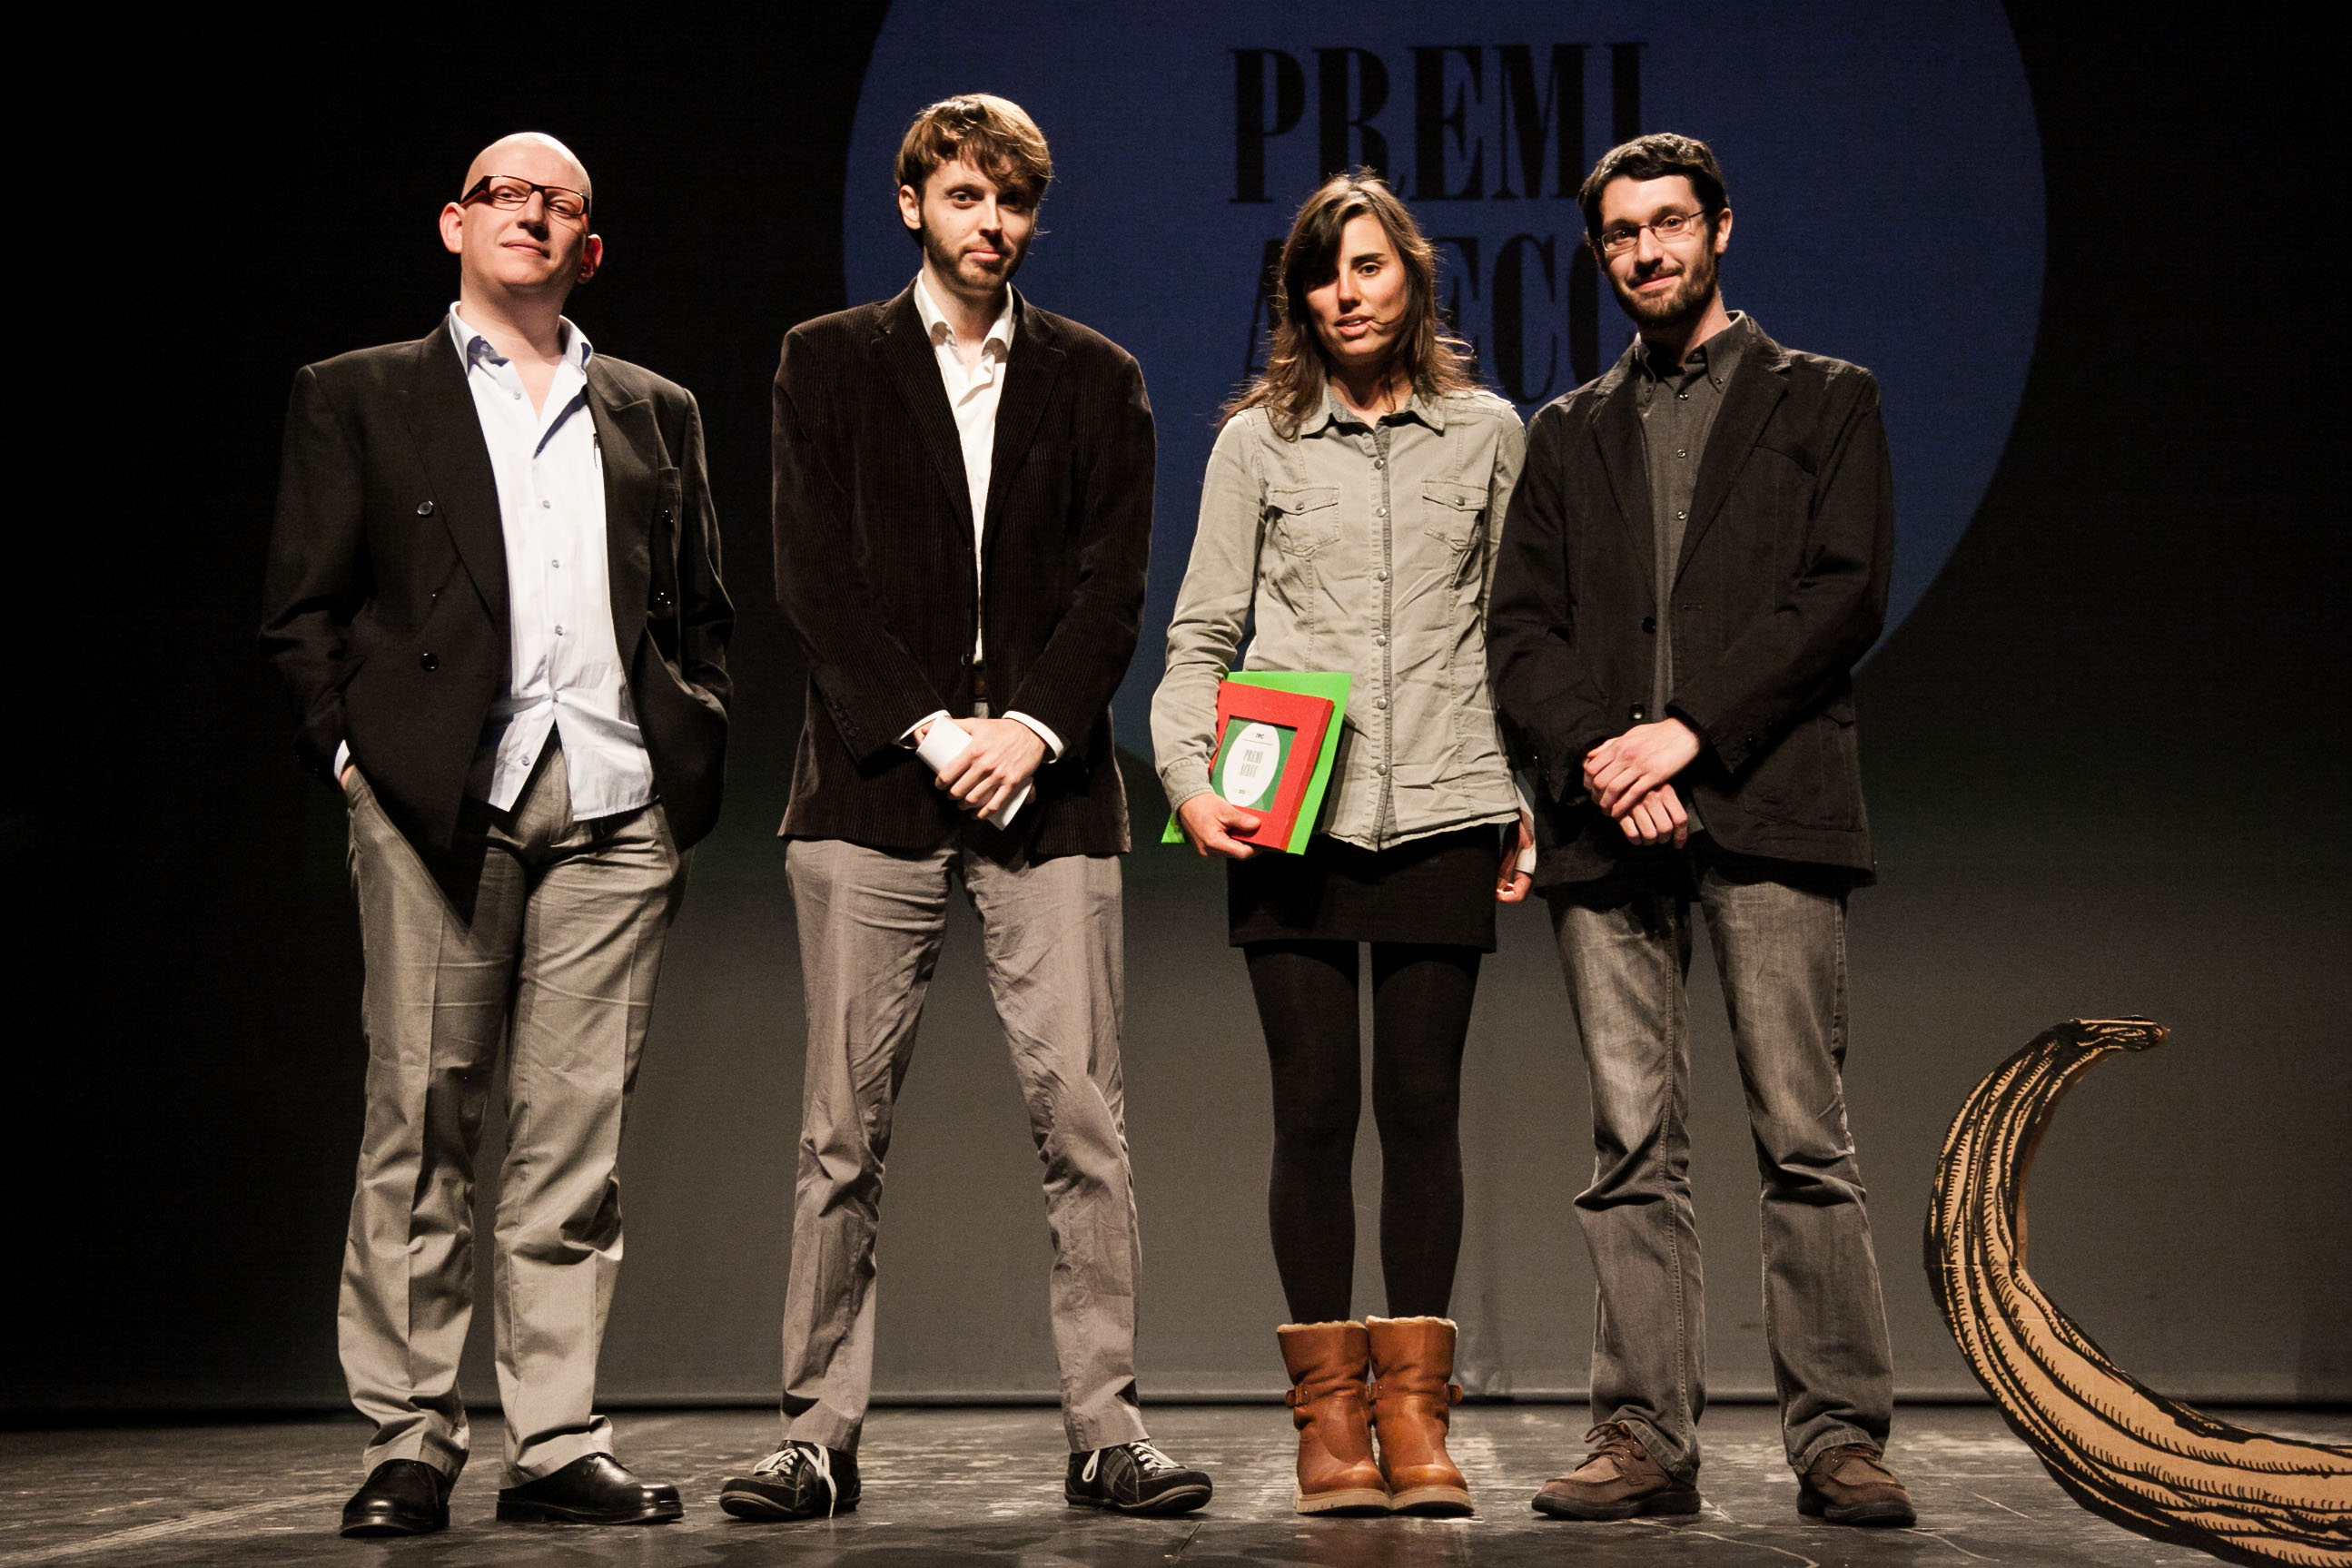 Liliana Torres, guanyadora del Premi de la Crítica 2013. Foto: Jaime Andrés Rojas Mickan